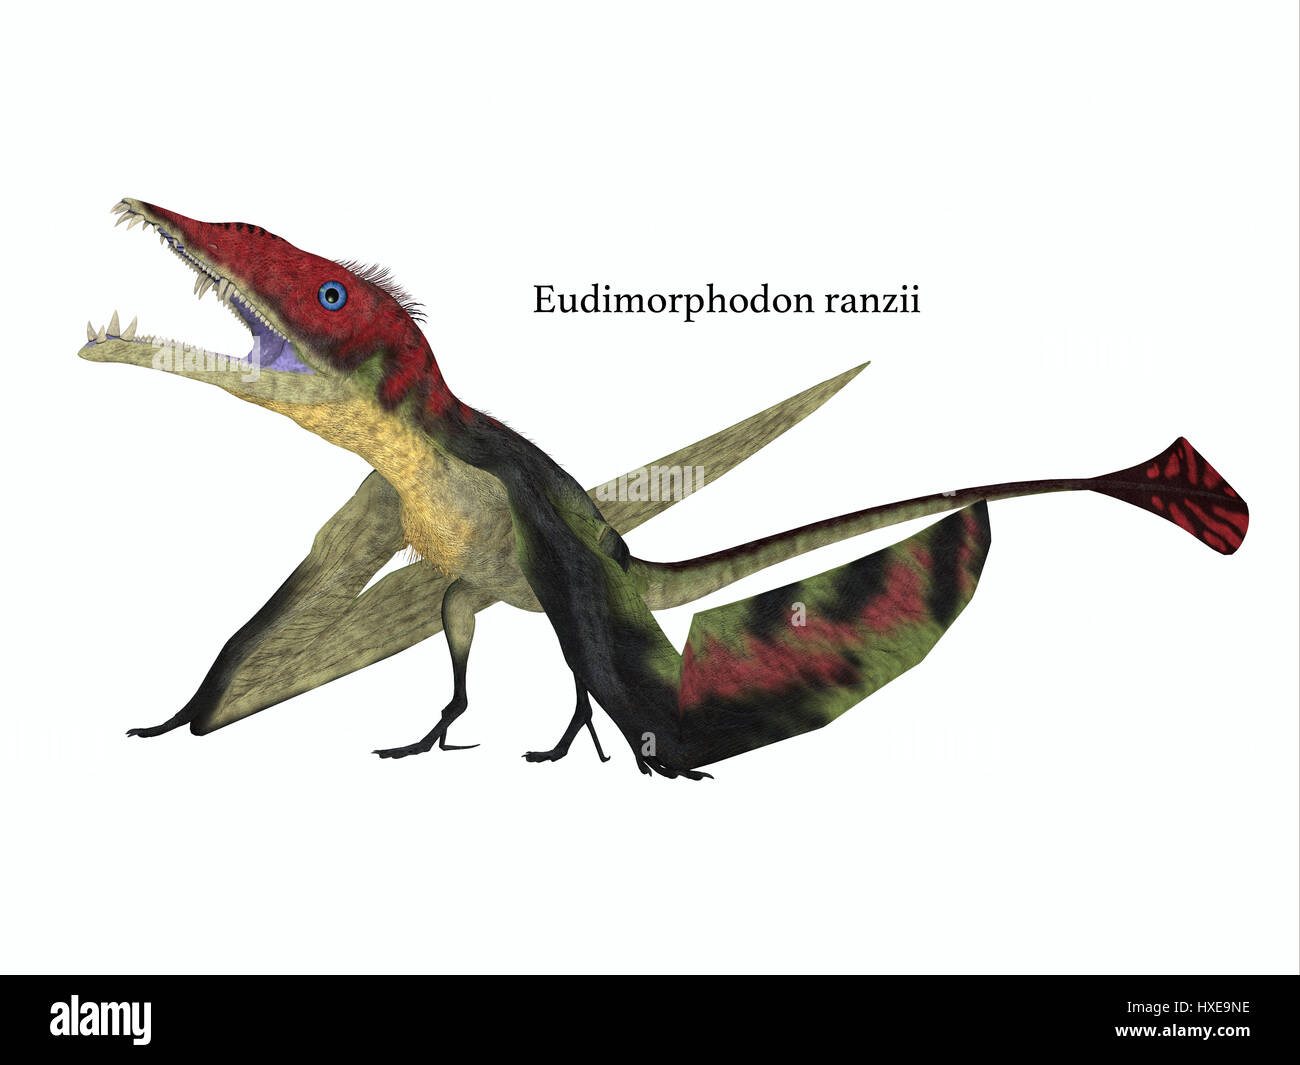 Carnivori Eudimorphodon era pteranodonte battenti rettile che ha vissuto in Italia nel periodo Triassico. Foto Stock